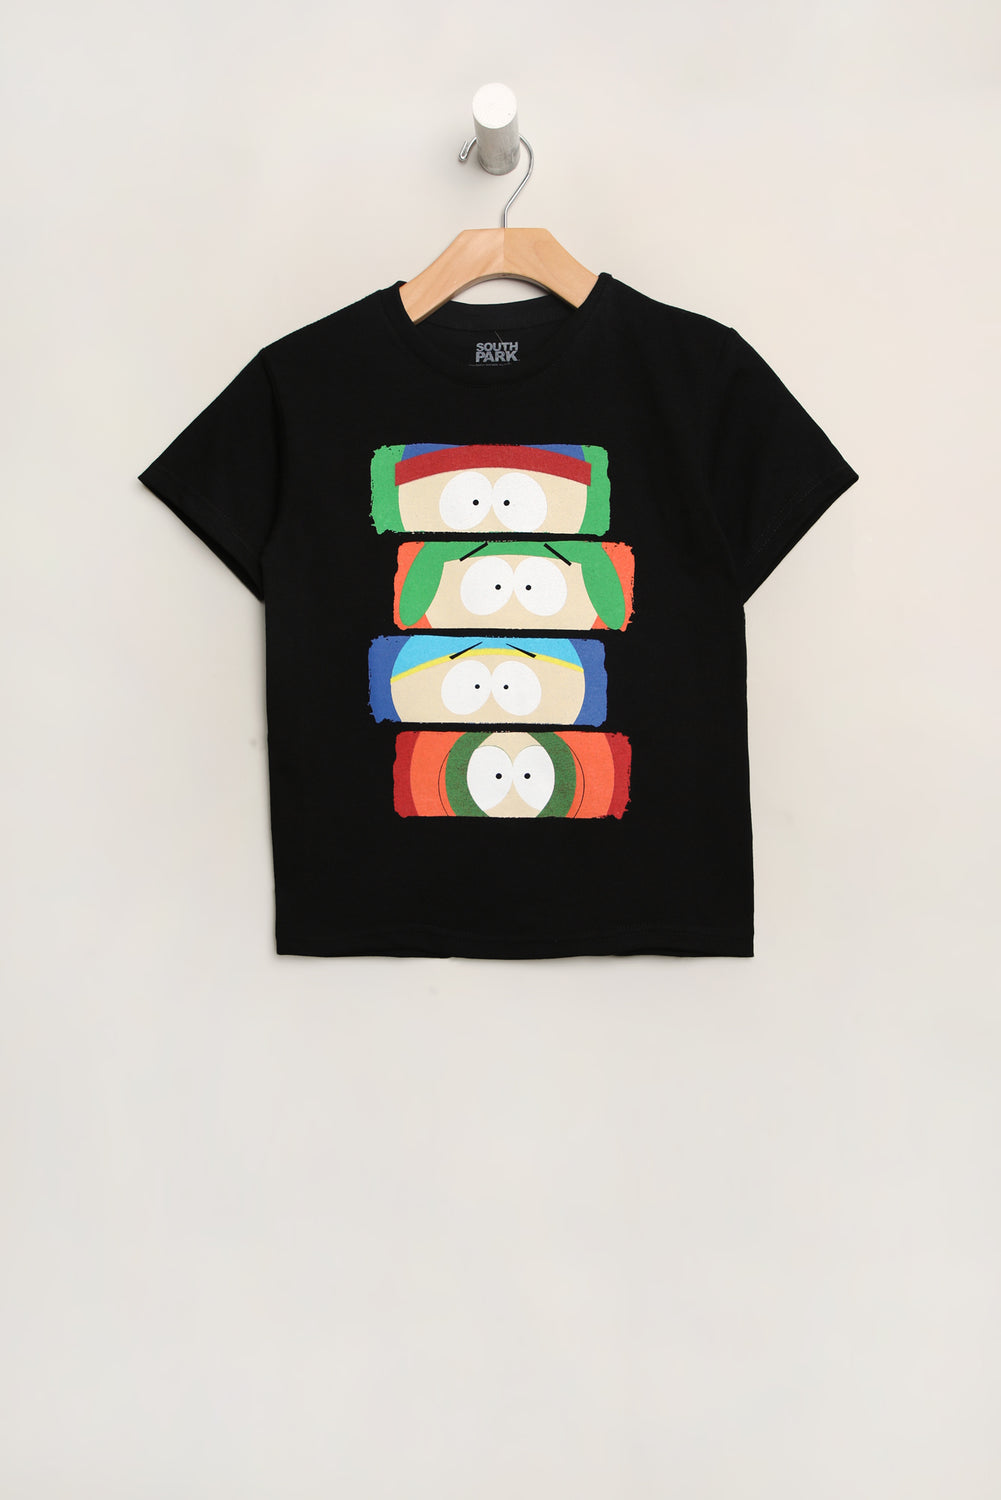 Youth South Park T-Shirt Youth South Park T-Shirt